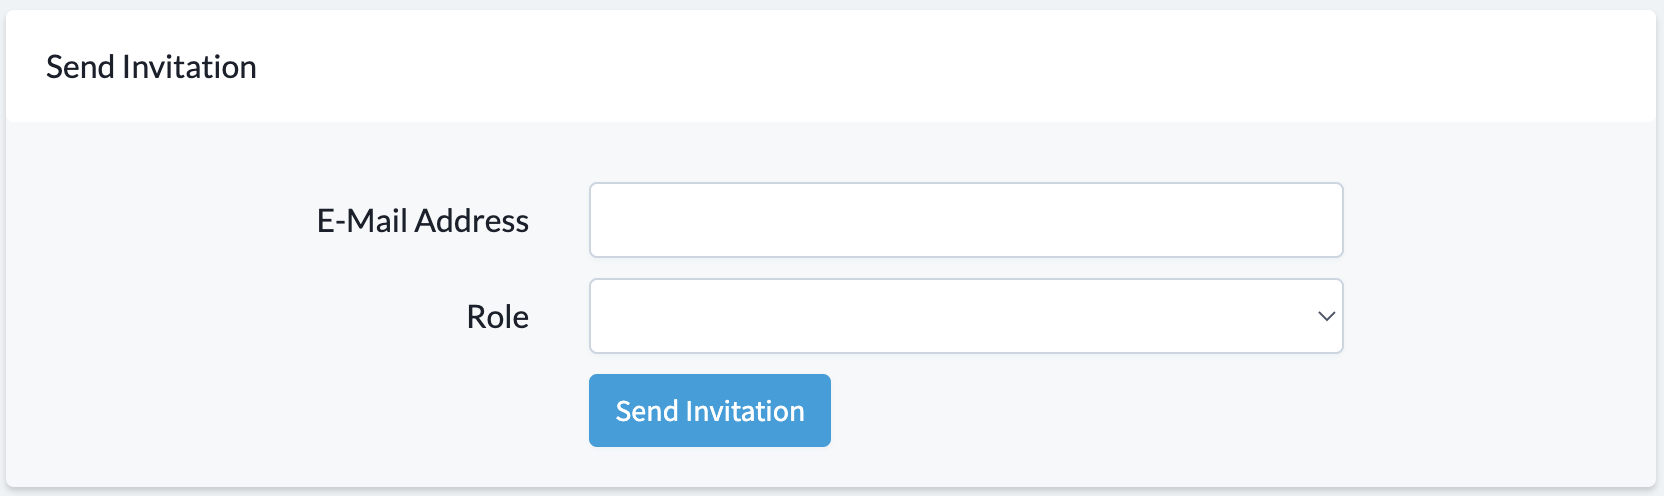 Send_Invitation_Box.png